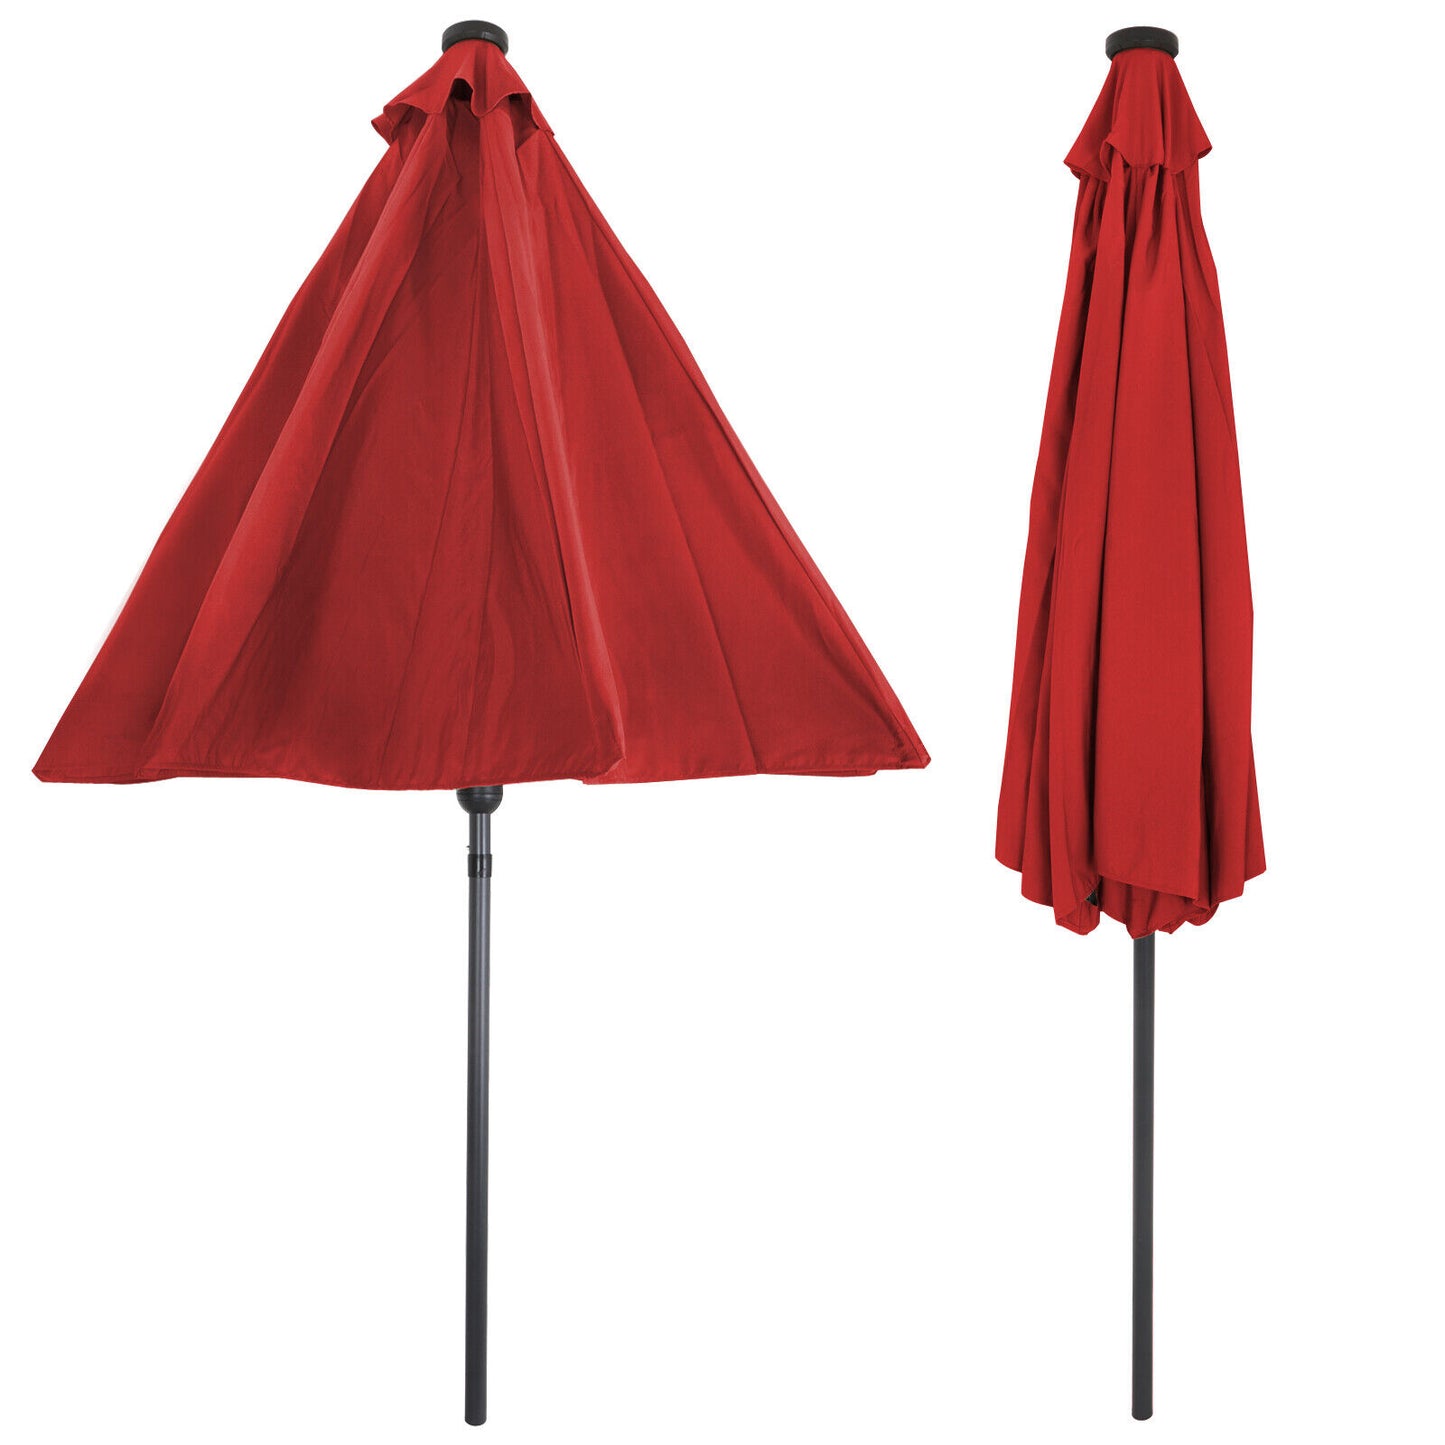 Sunshine Outdoor 10ft Solar Umbrella - 32 LED Light Aluminium Red Tilt Cover